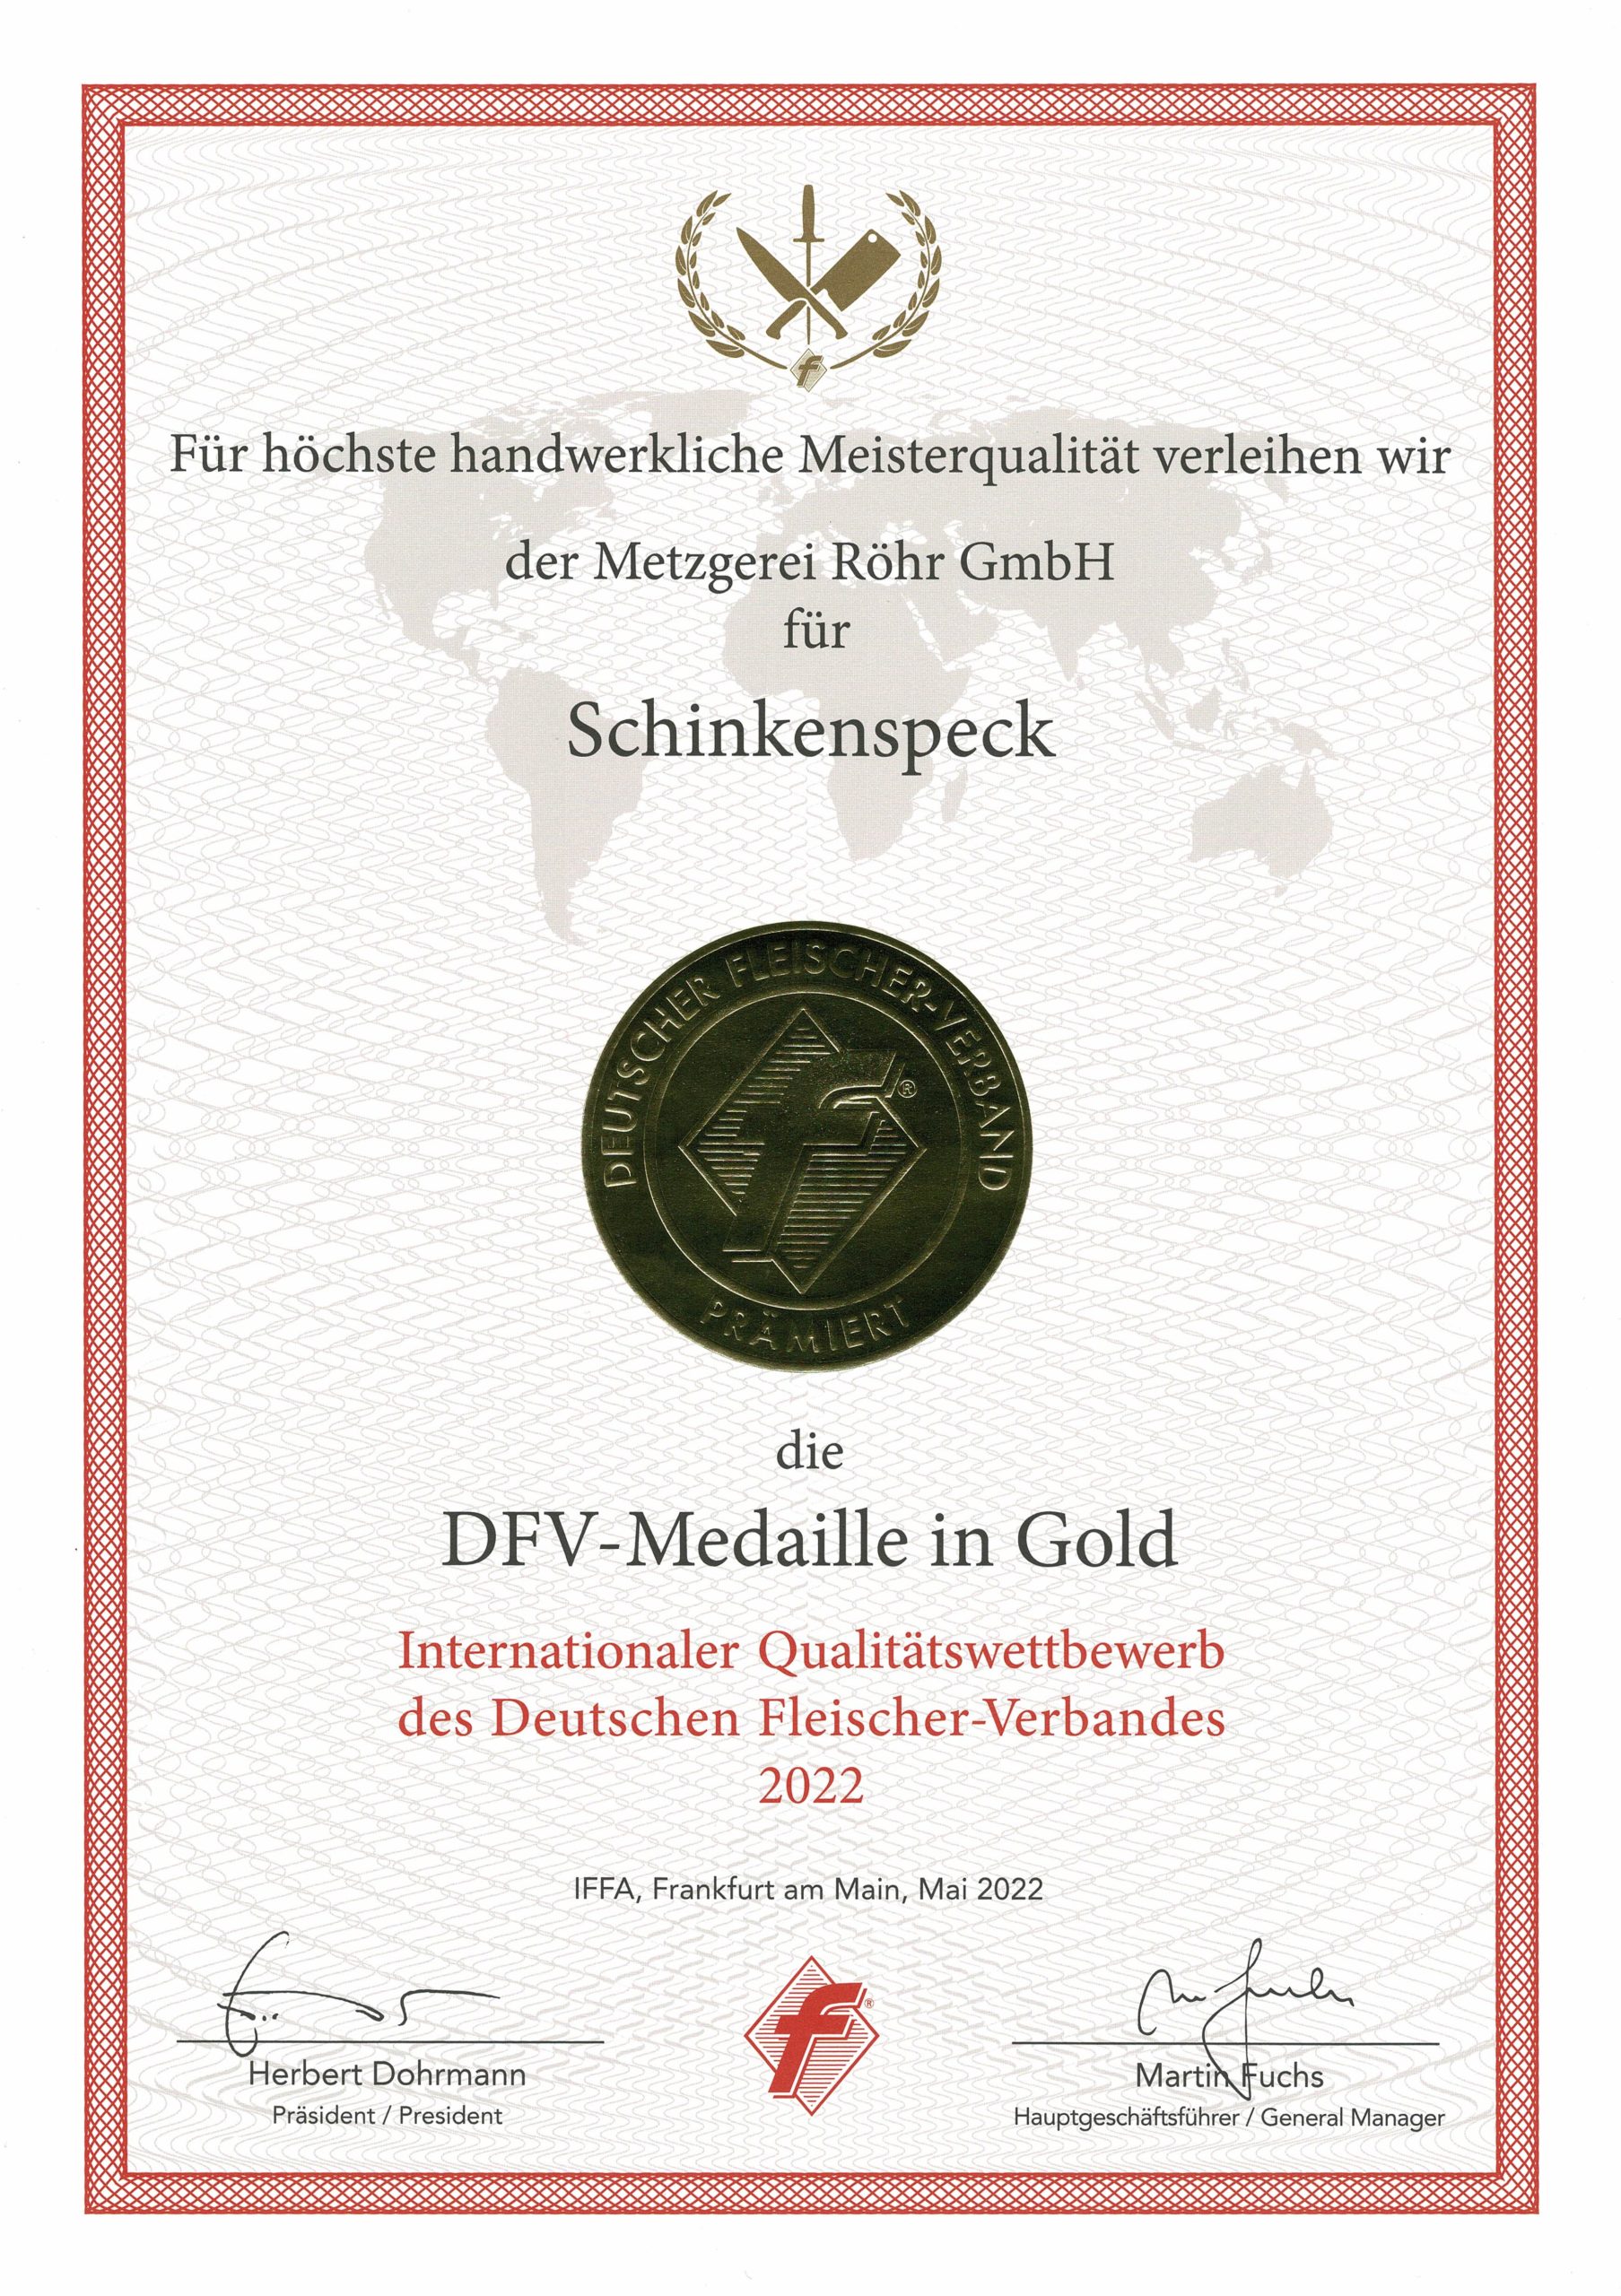 DFV-Medaille in Gold für Schinkenspeck